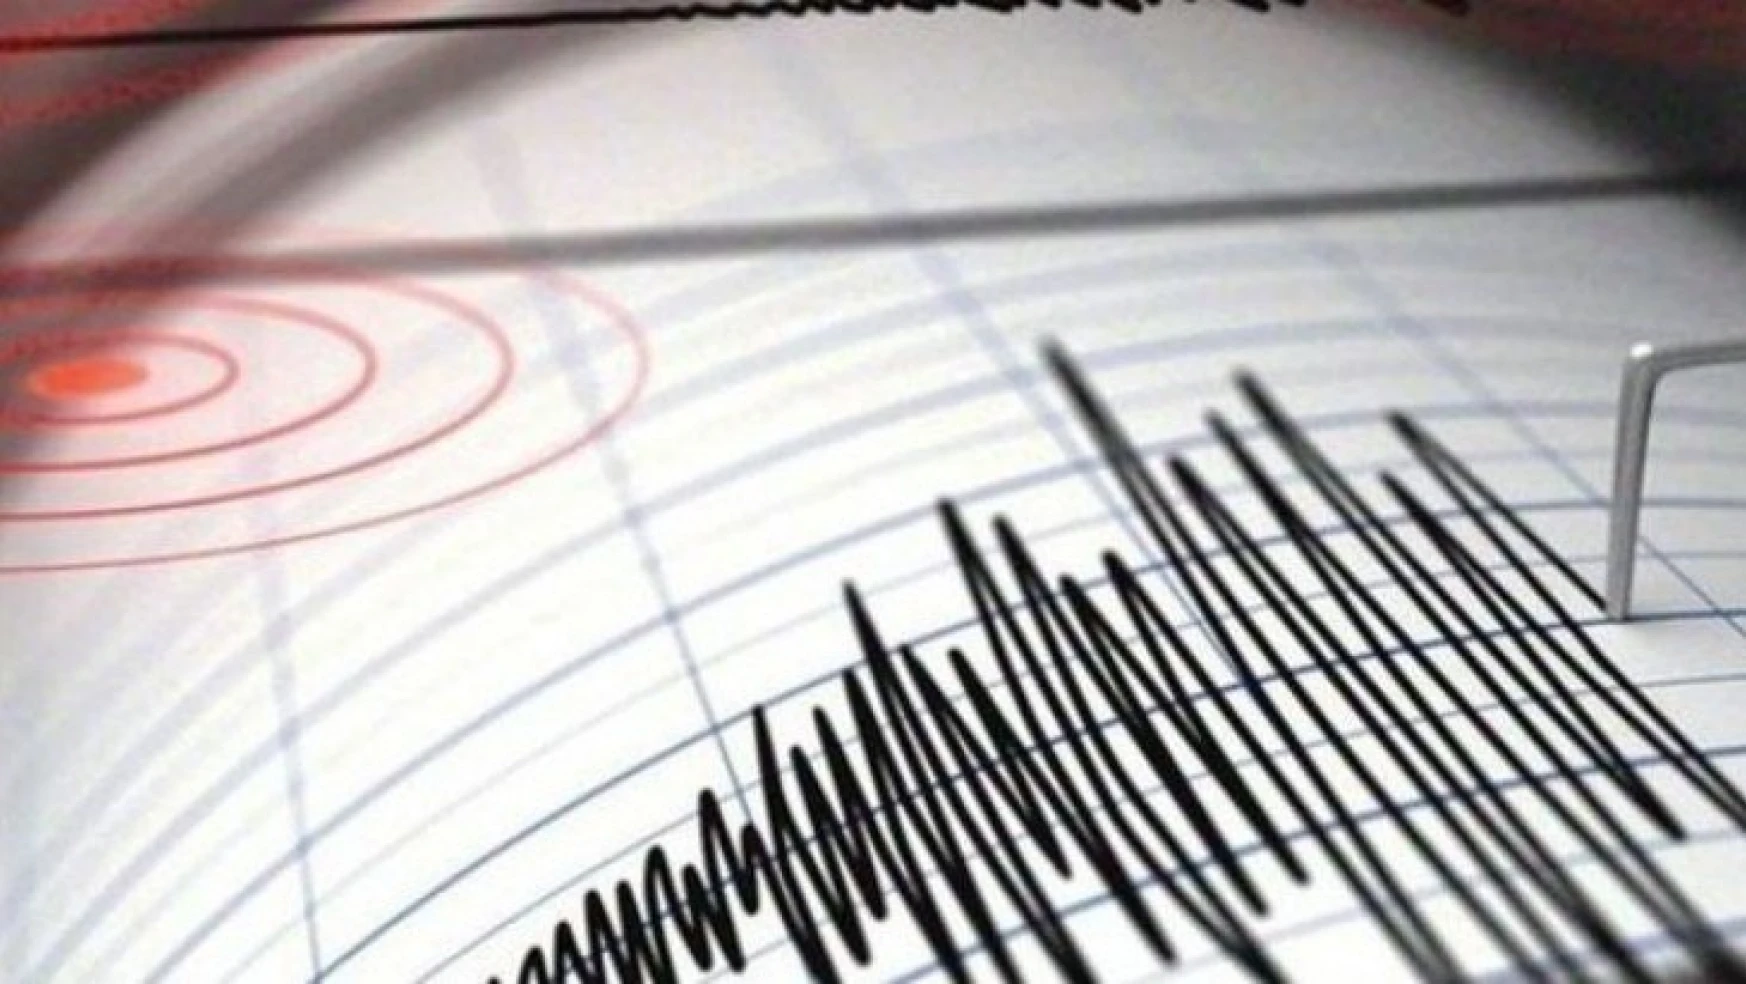 Bingöl'de 5,5 şiddetinde bir deprem daha oldu